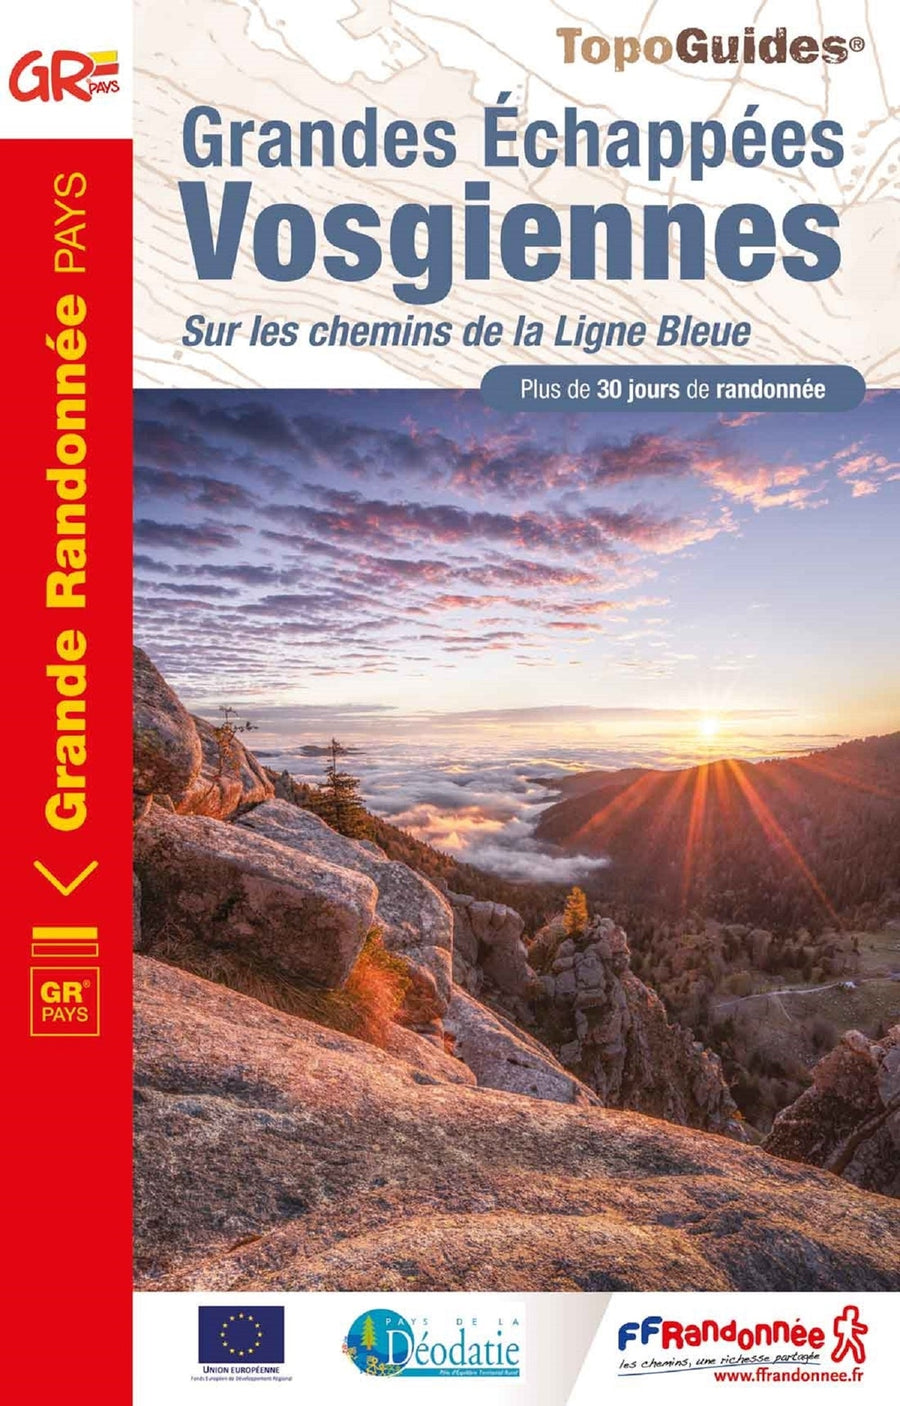 Topoguide de randonnée - Grandes Echappées Vosgiennes, Sur les chemins de la Ligne Bleue | FFR guide de randonnée FFR - Fédération Française de Randonnée 